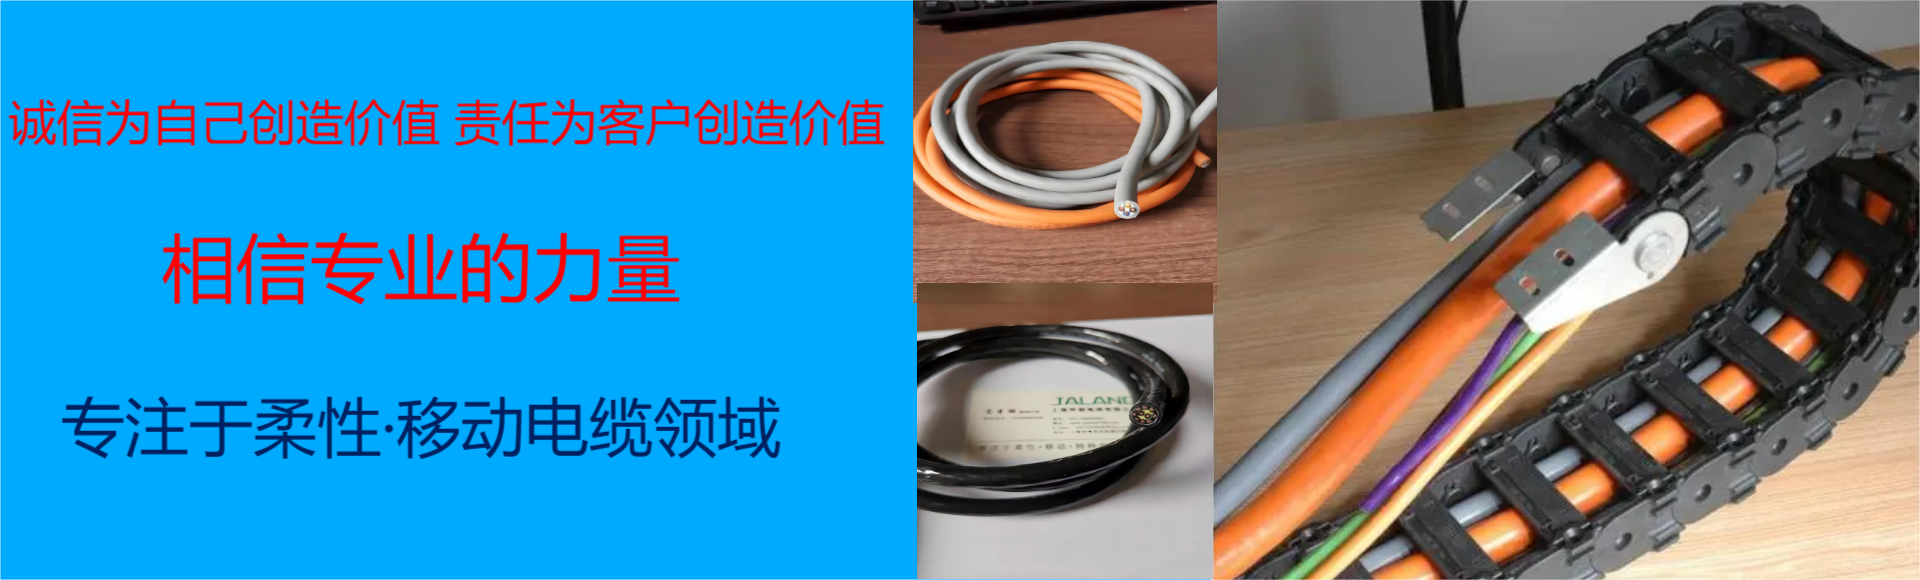 上海甲朗电缆有限公司